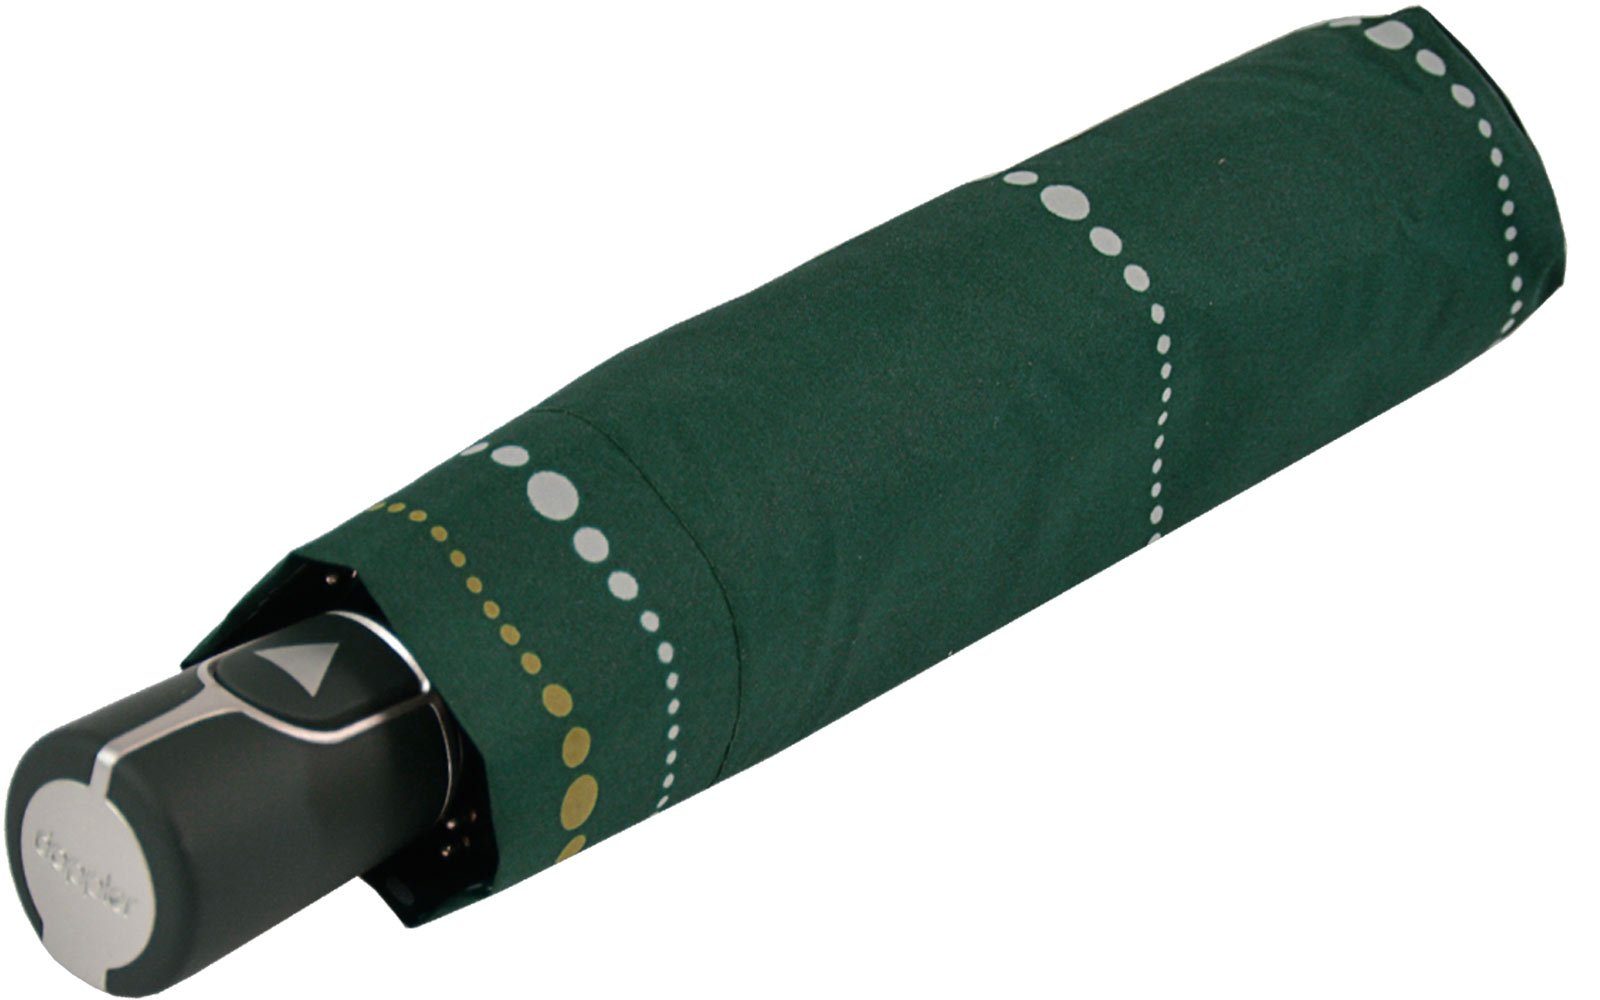 - Magic doppler® stabil Damen und Auf-Automatik Fiber Taschenregenschirm grün praktisch elegant, Sydney,